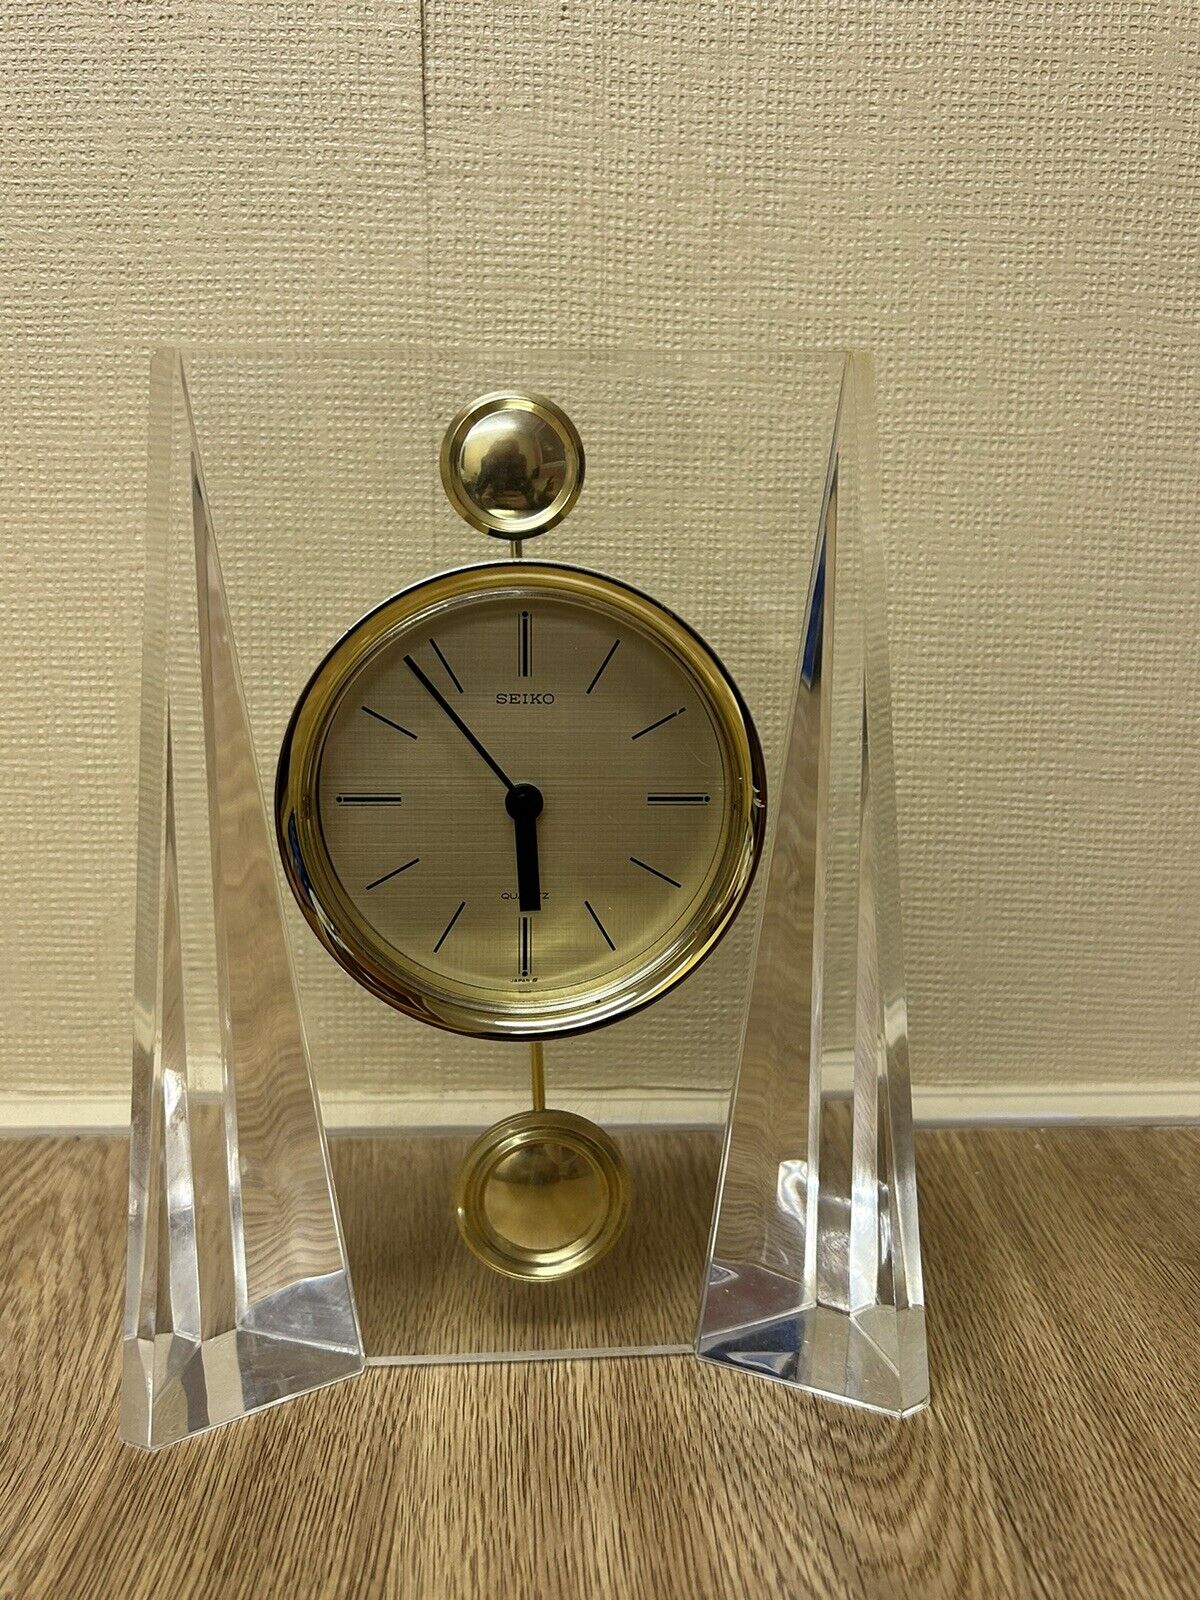 Vintage Seiko table clock